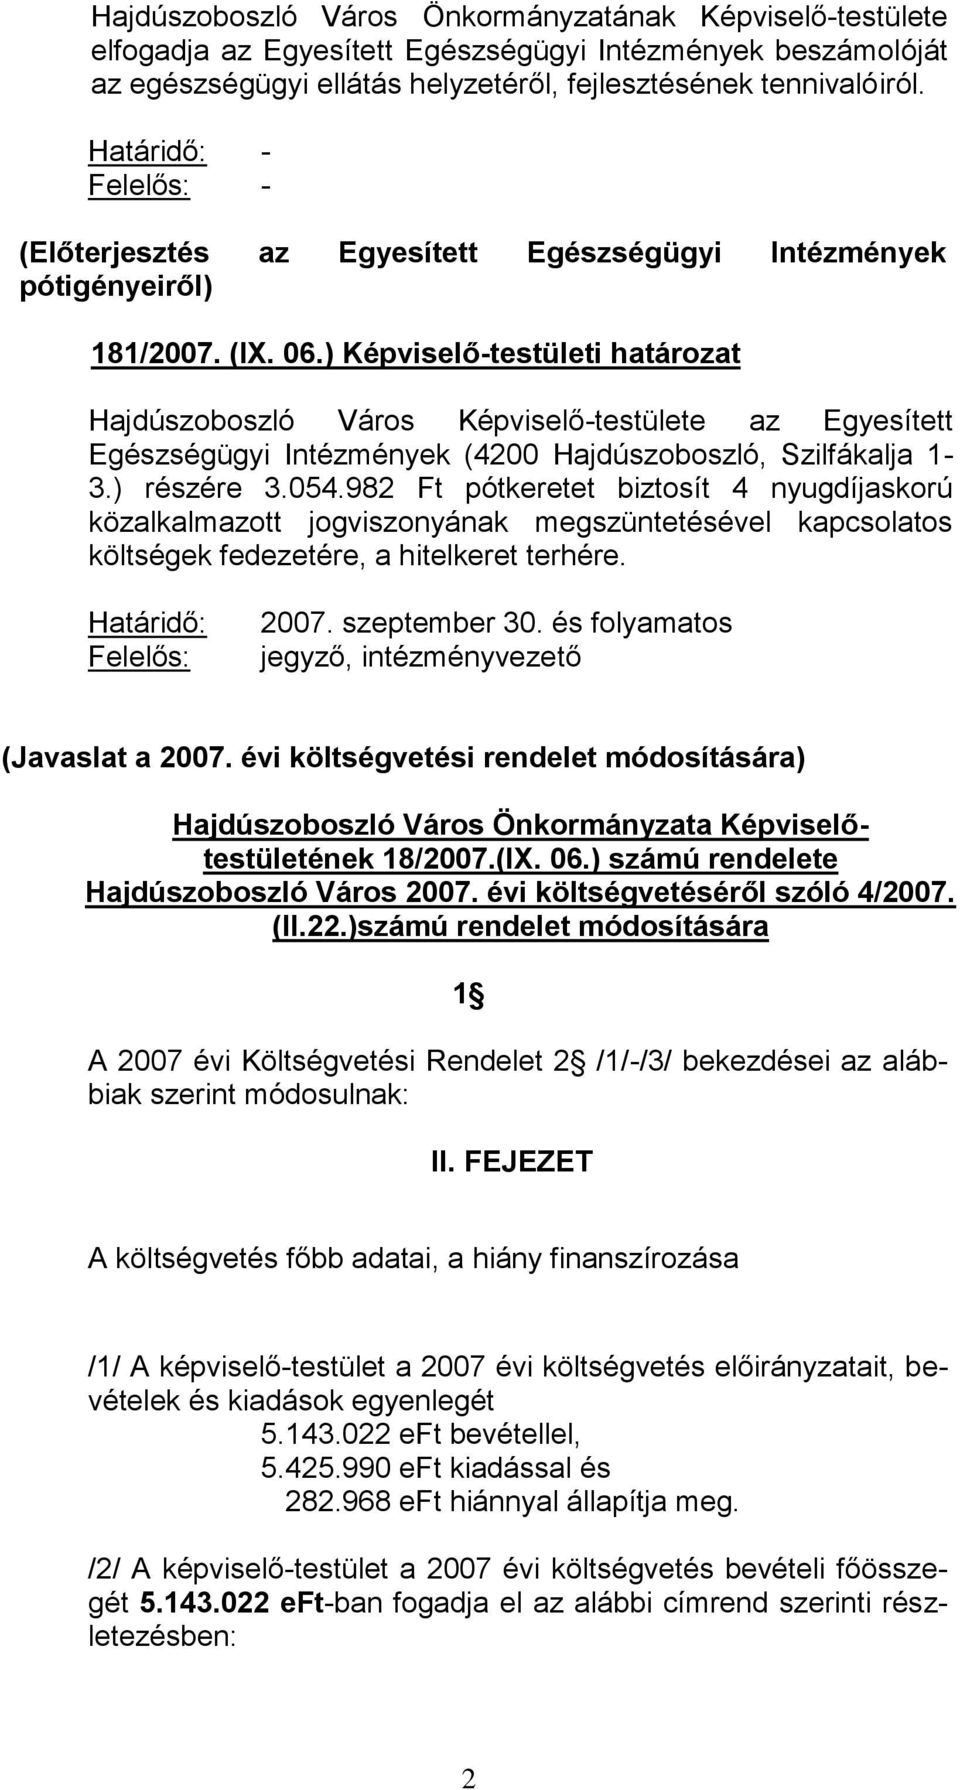 ) Képviselő-testületi határozat Hajdúszoboszló Város Képviselő-testülete az Egyesített Egészségügyi Intézmények (4200 Hajdúszoboszló, Szilfákalja 1-3.) részére 3.054.